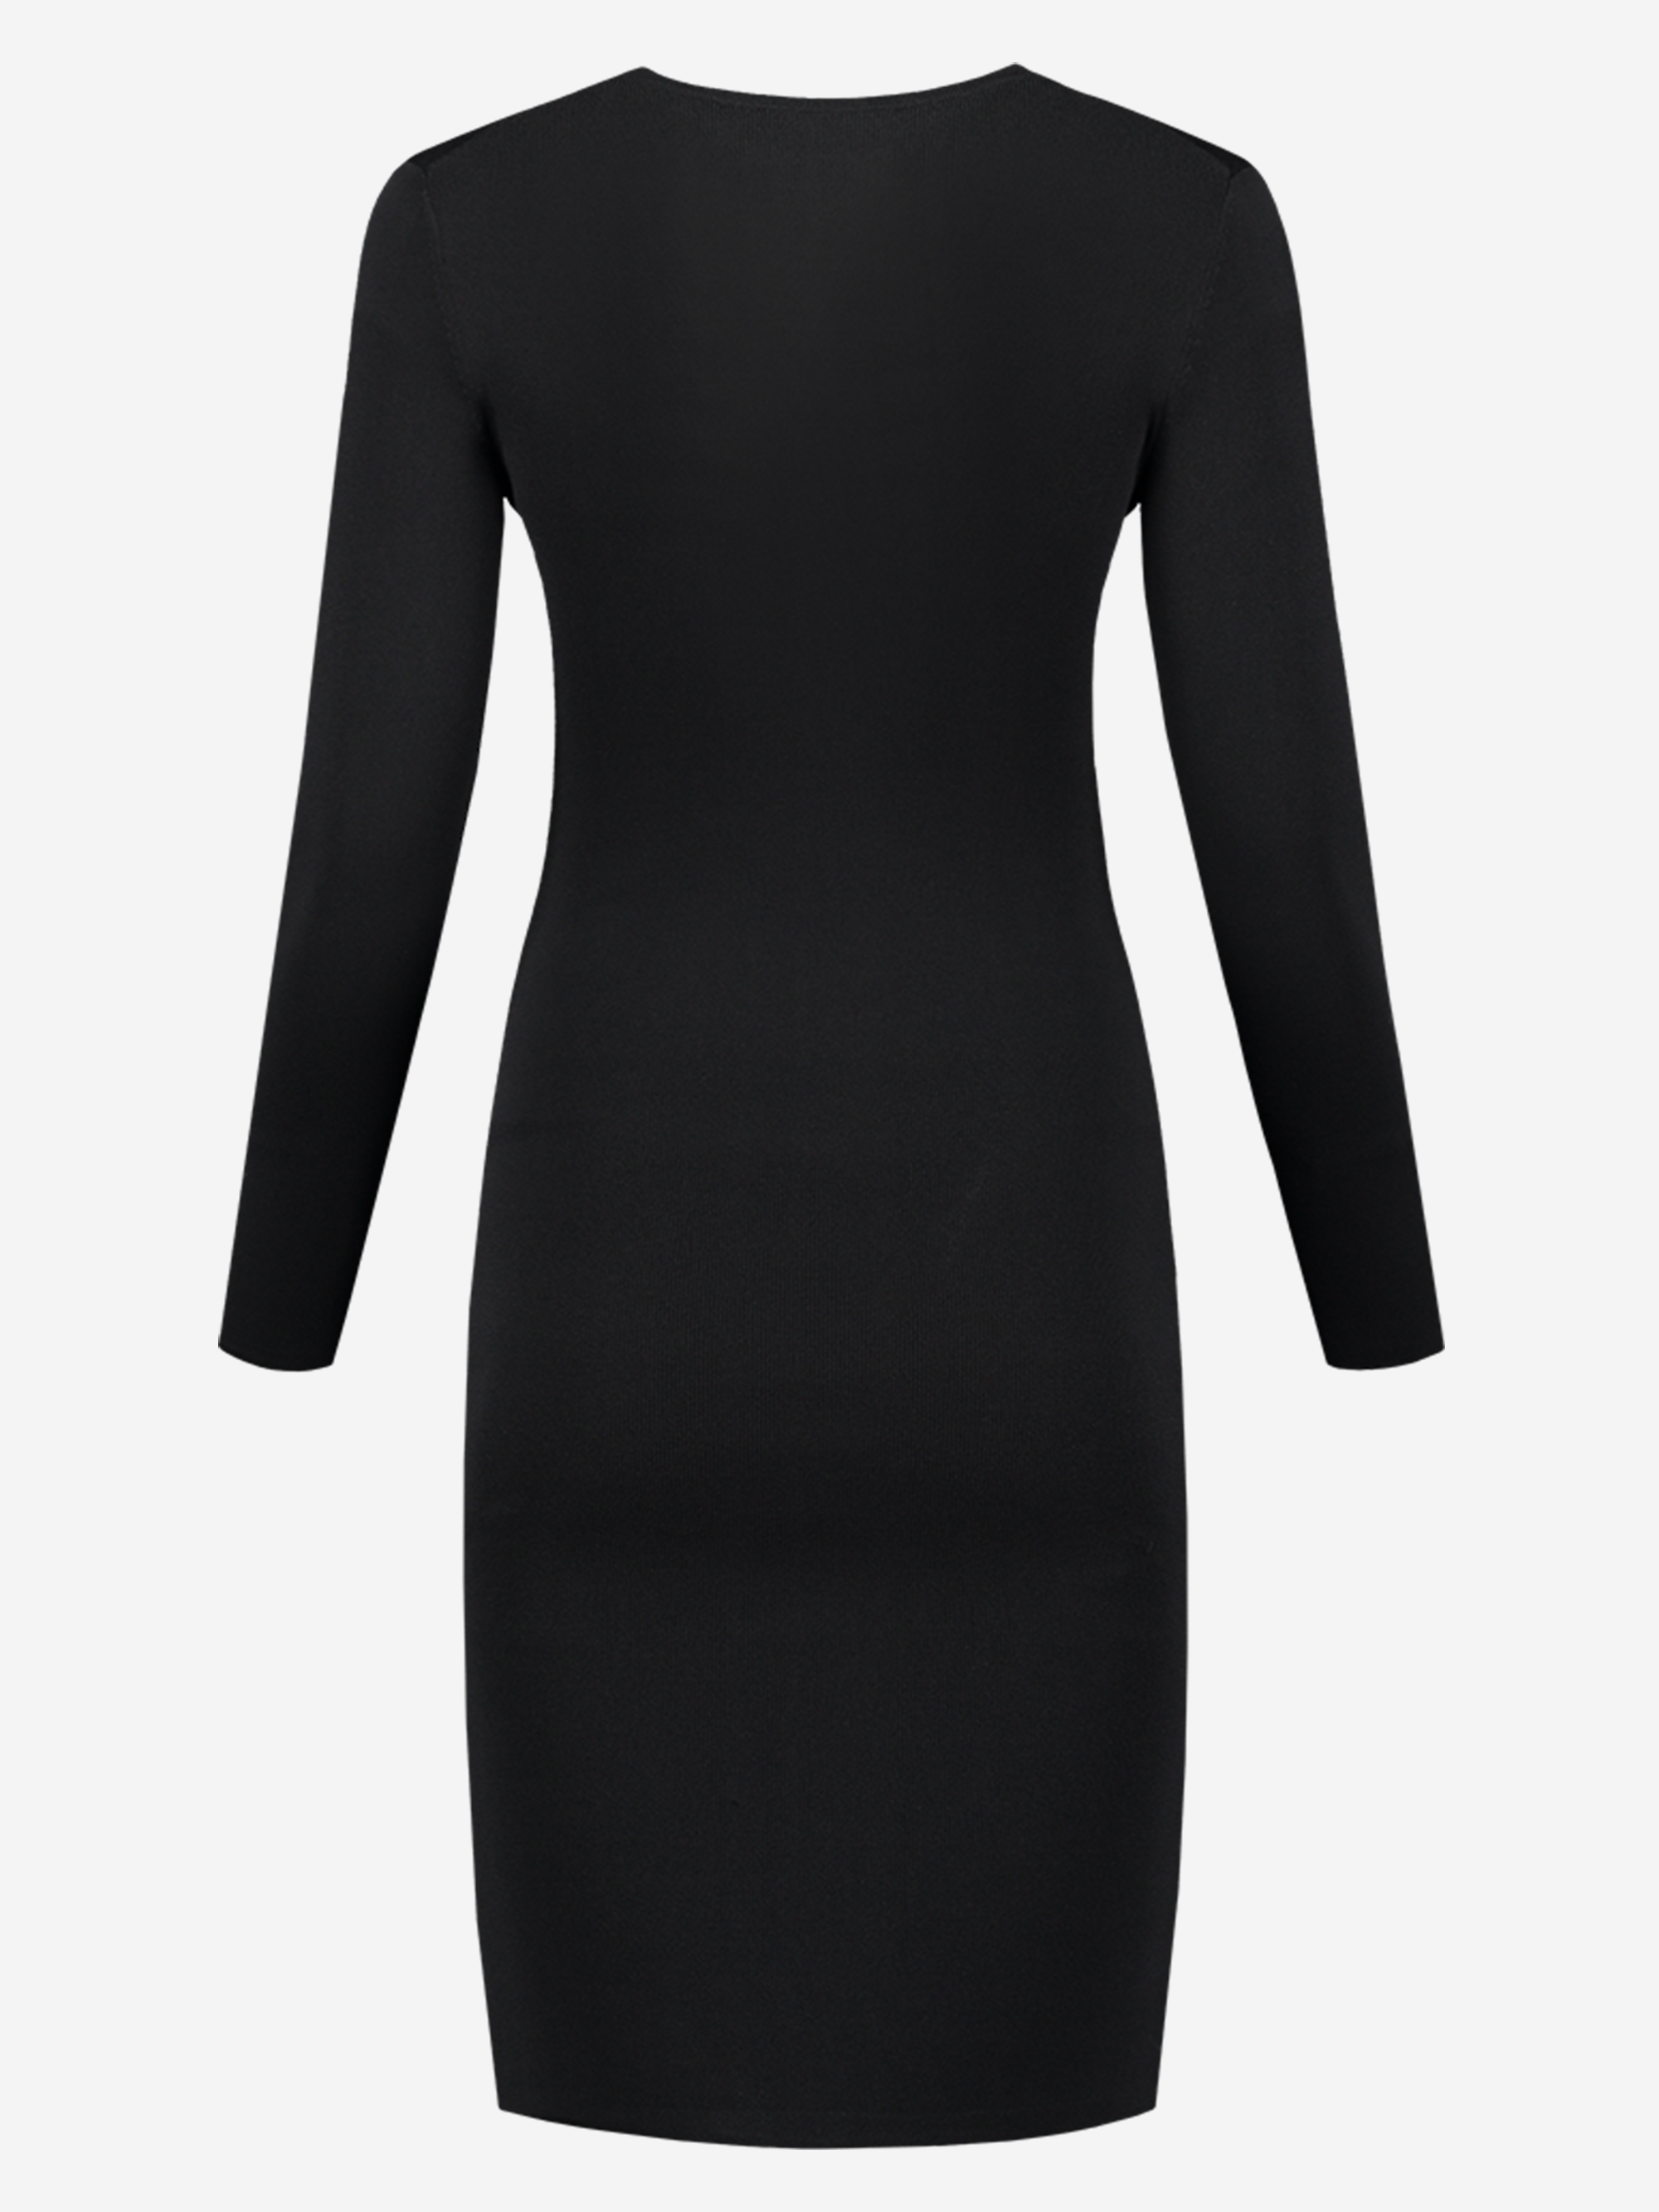 Zwarte jurk met v-hals